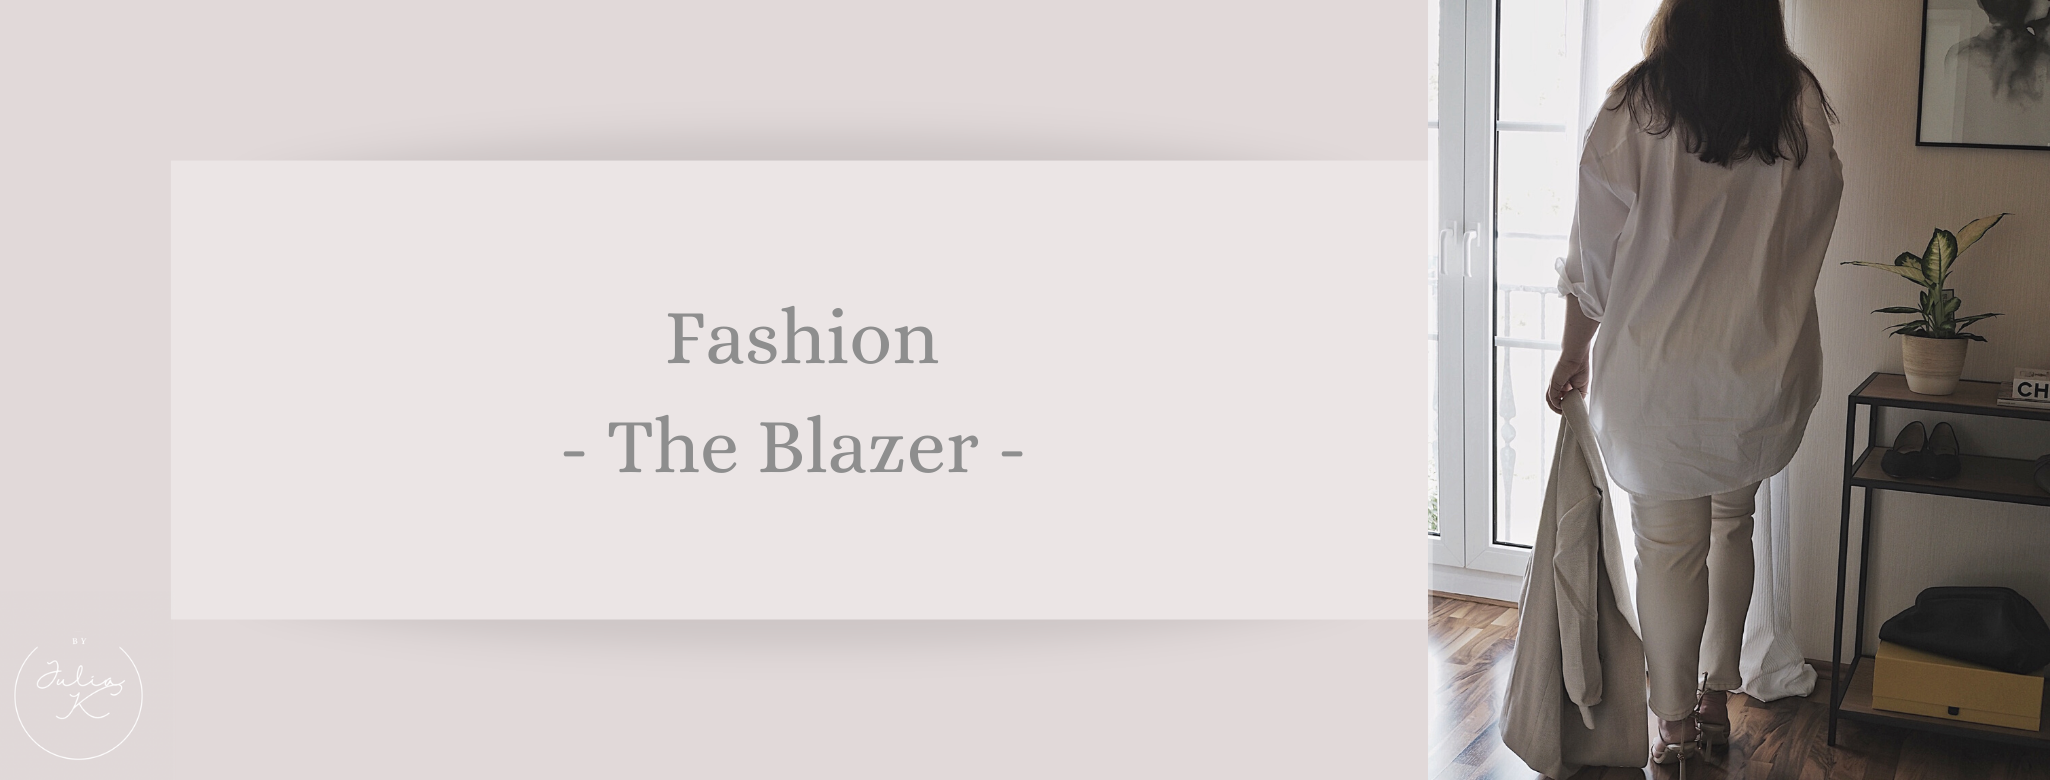 Fashion: The Blazer